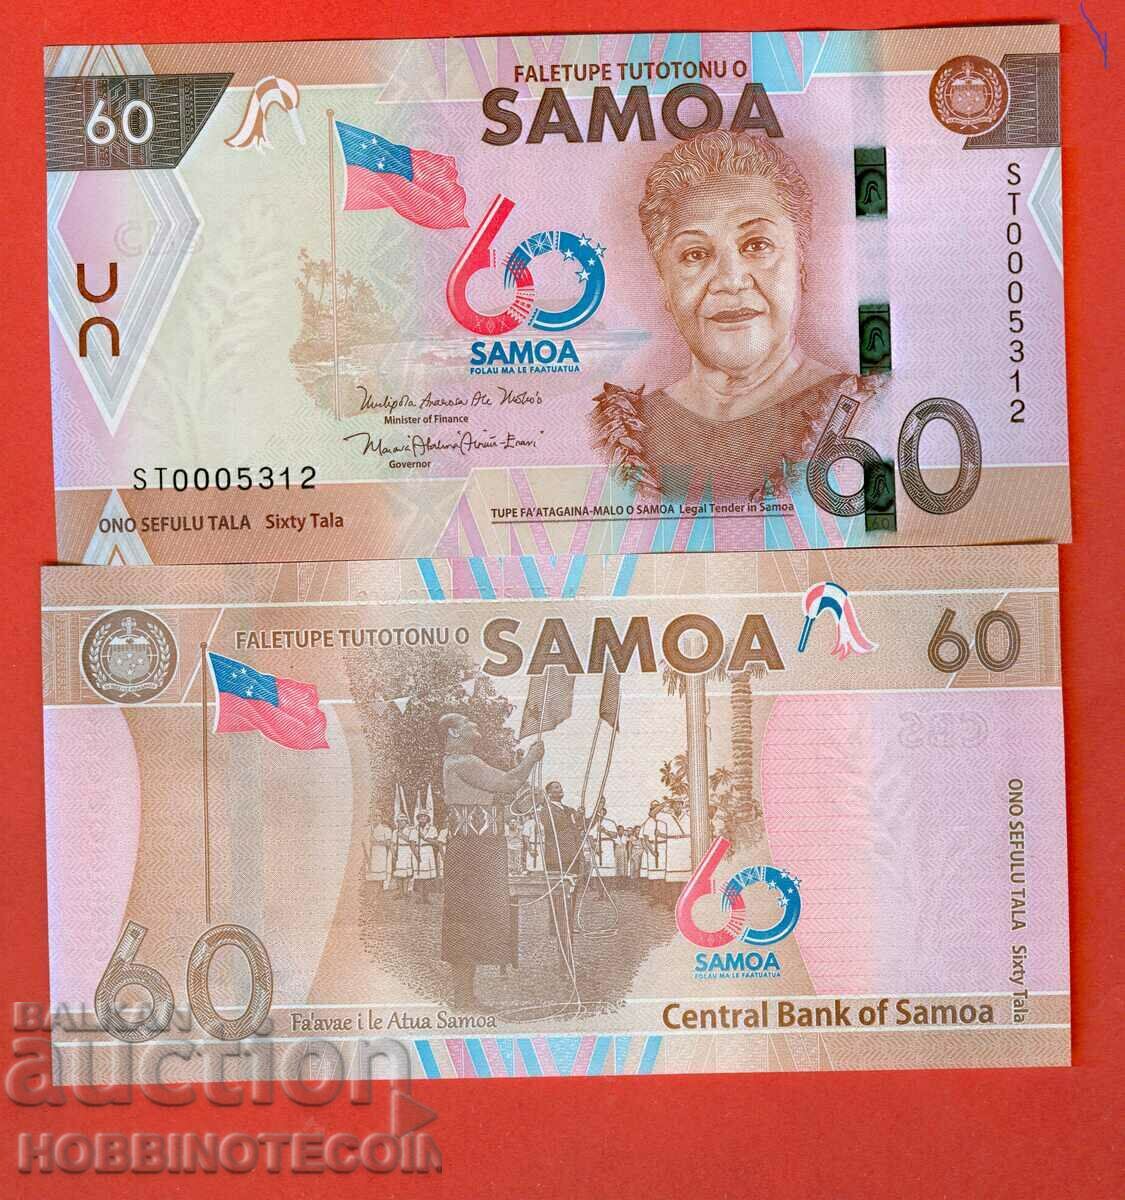 WESTERN SAMOA SAMOA 60 issue issue 20 NO23BA UNC